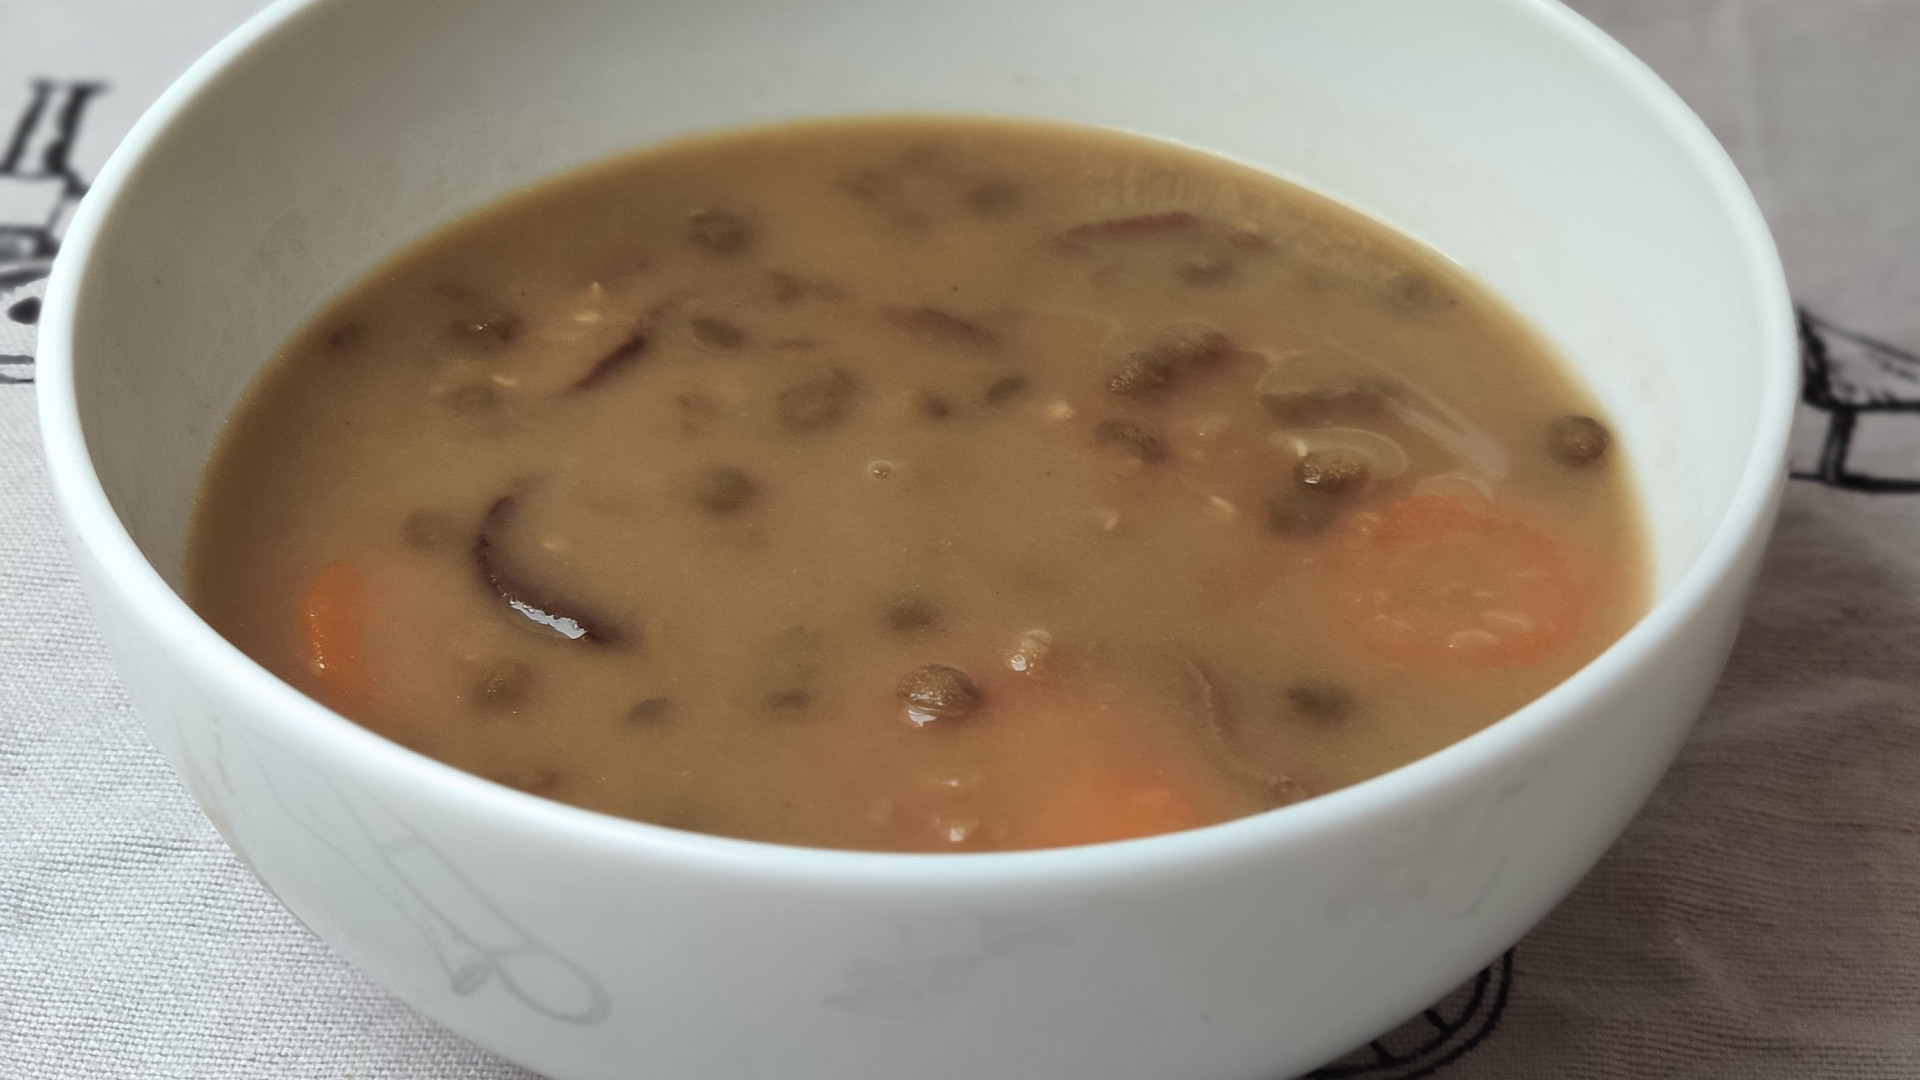 Čočkovo-houbová polévka